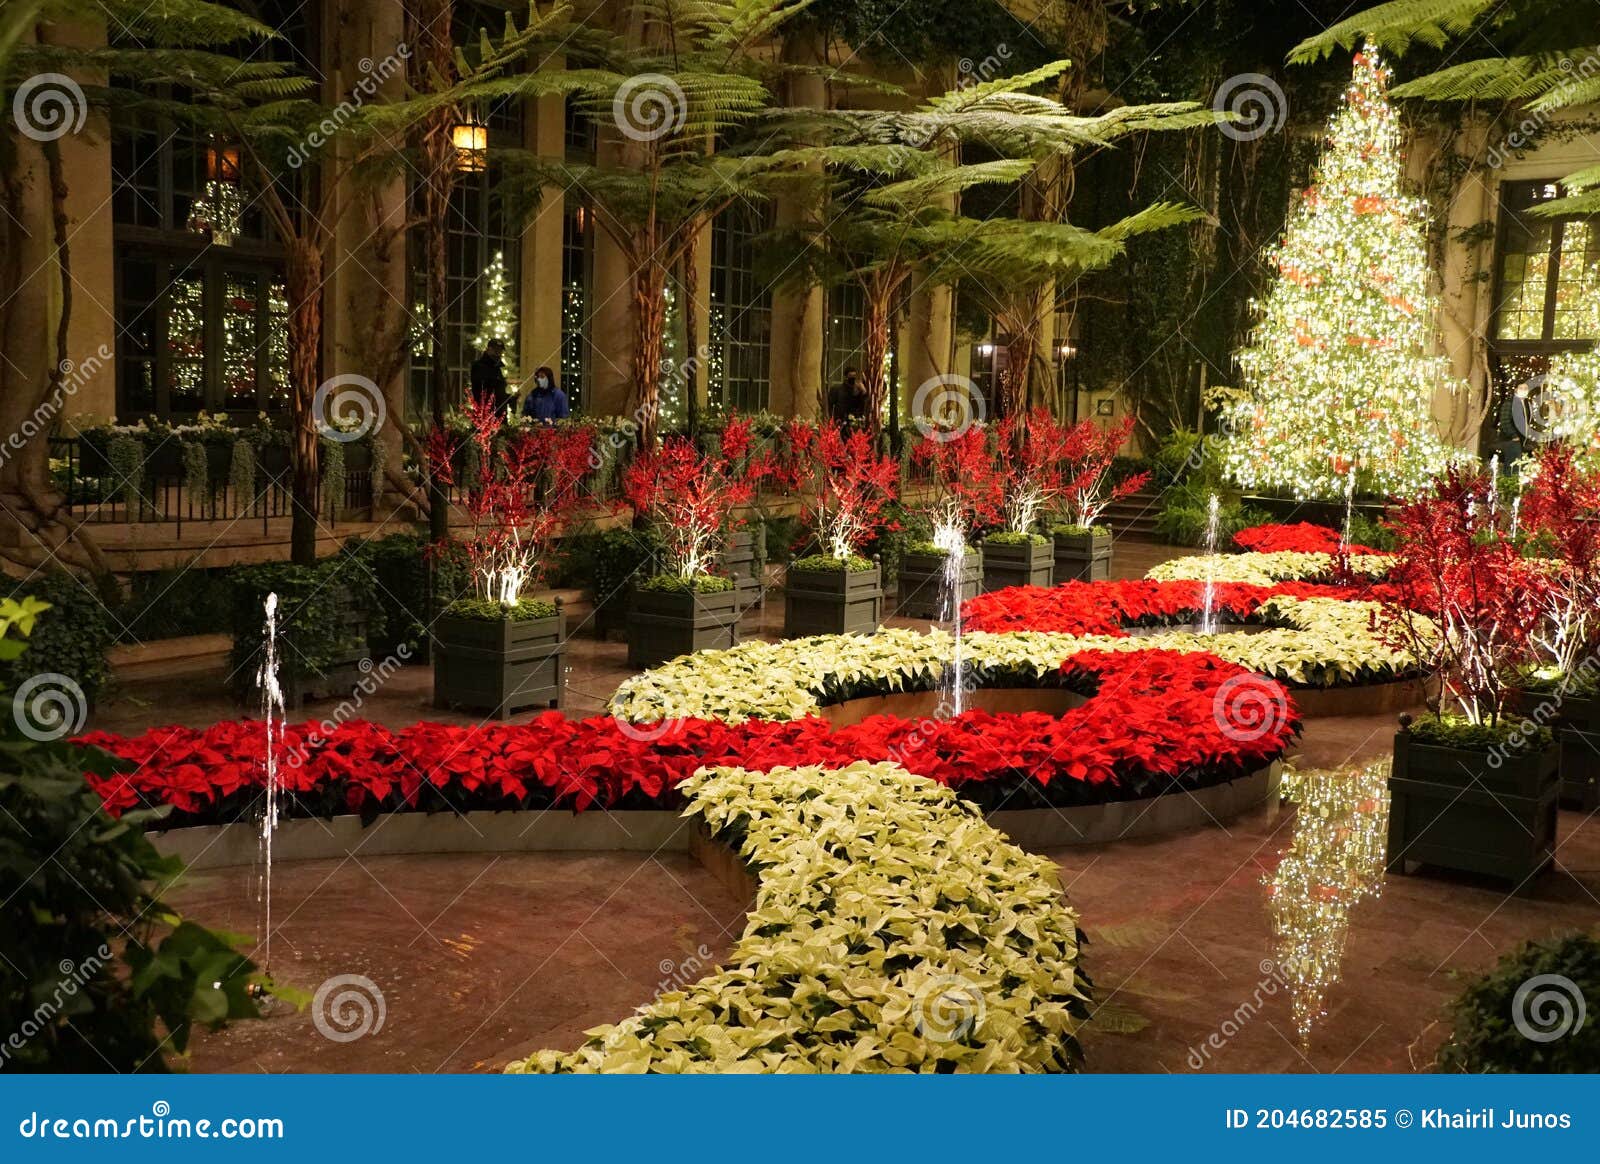 Hermoso Jardín Con Fuentes De Agua Decoradas Con Nochebuena Roja Y Blanca  Imagen de archivo - Imagen de estacional, feliz: 204682585